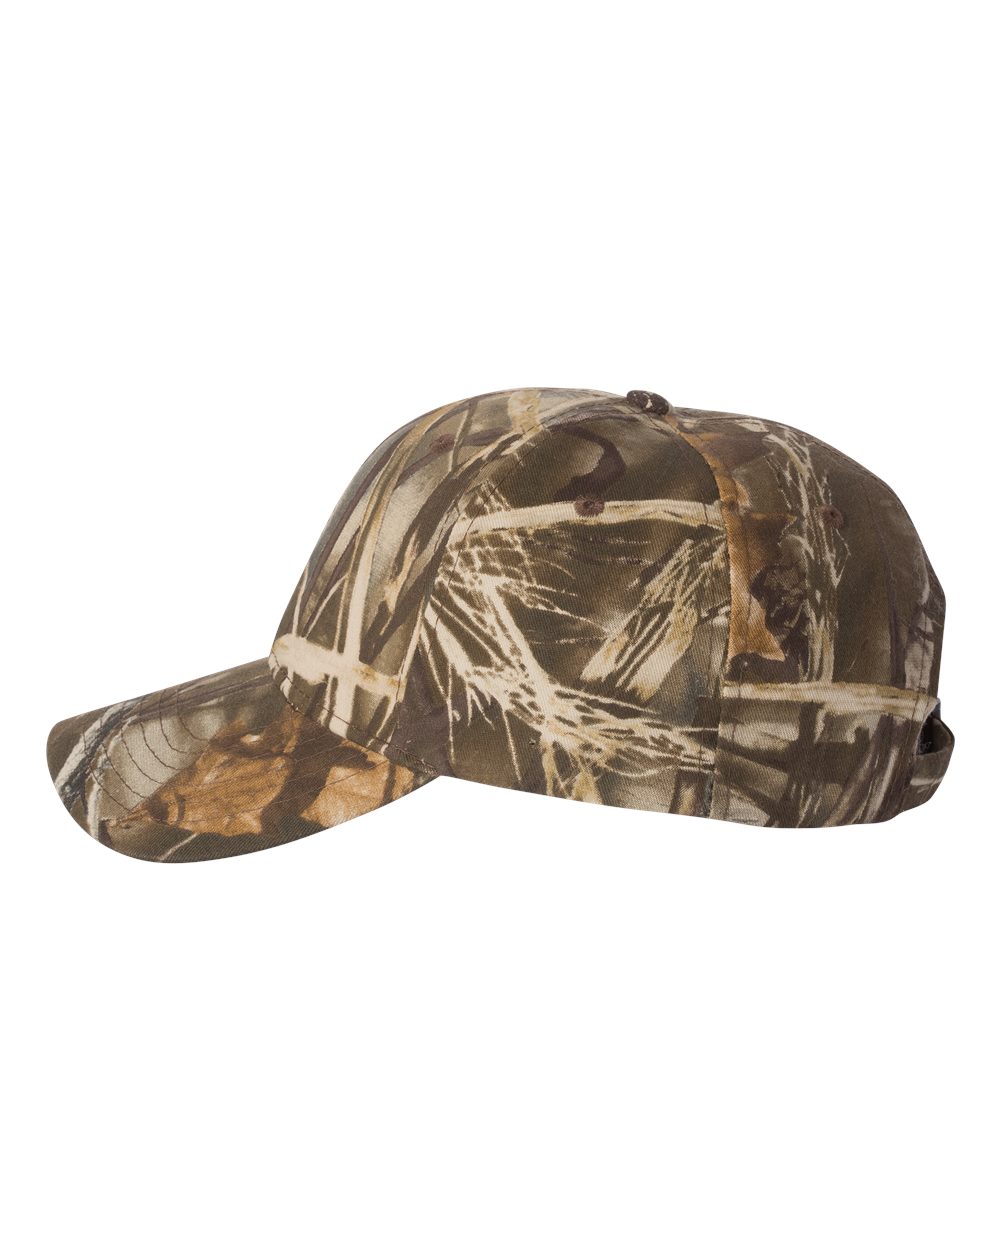 Kati Realtree Max 4 Camo Camouflage Hunting Baseball Hat Cap NEW 